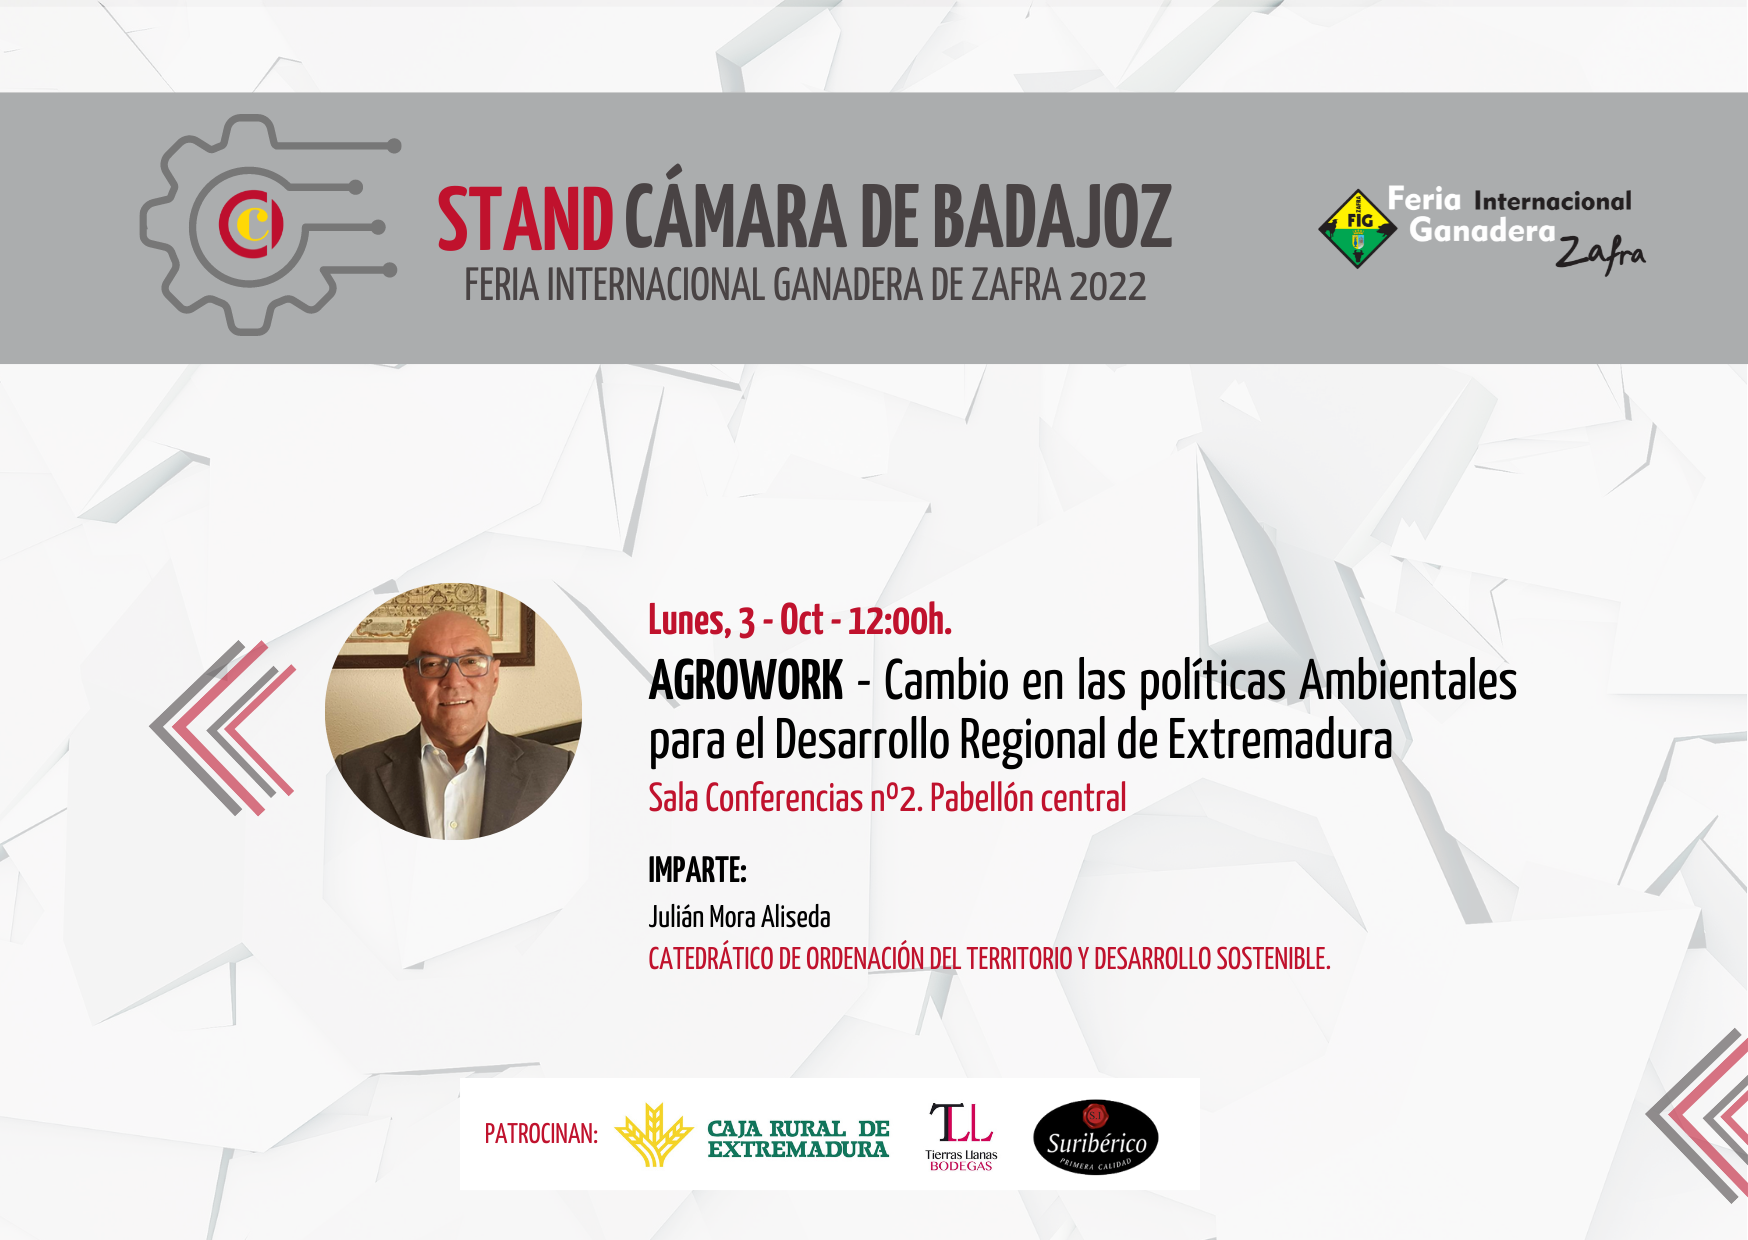 AGROWORK: Cambio en las políticas Ambientales para el Desarrollo Regional de Extremadura